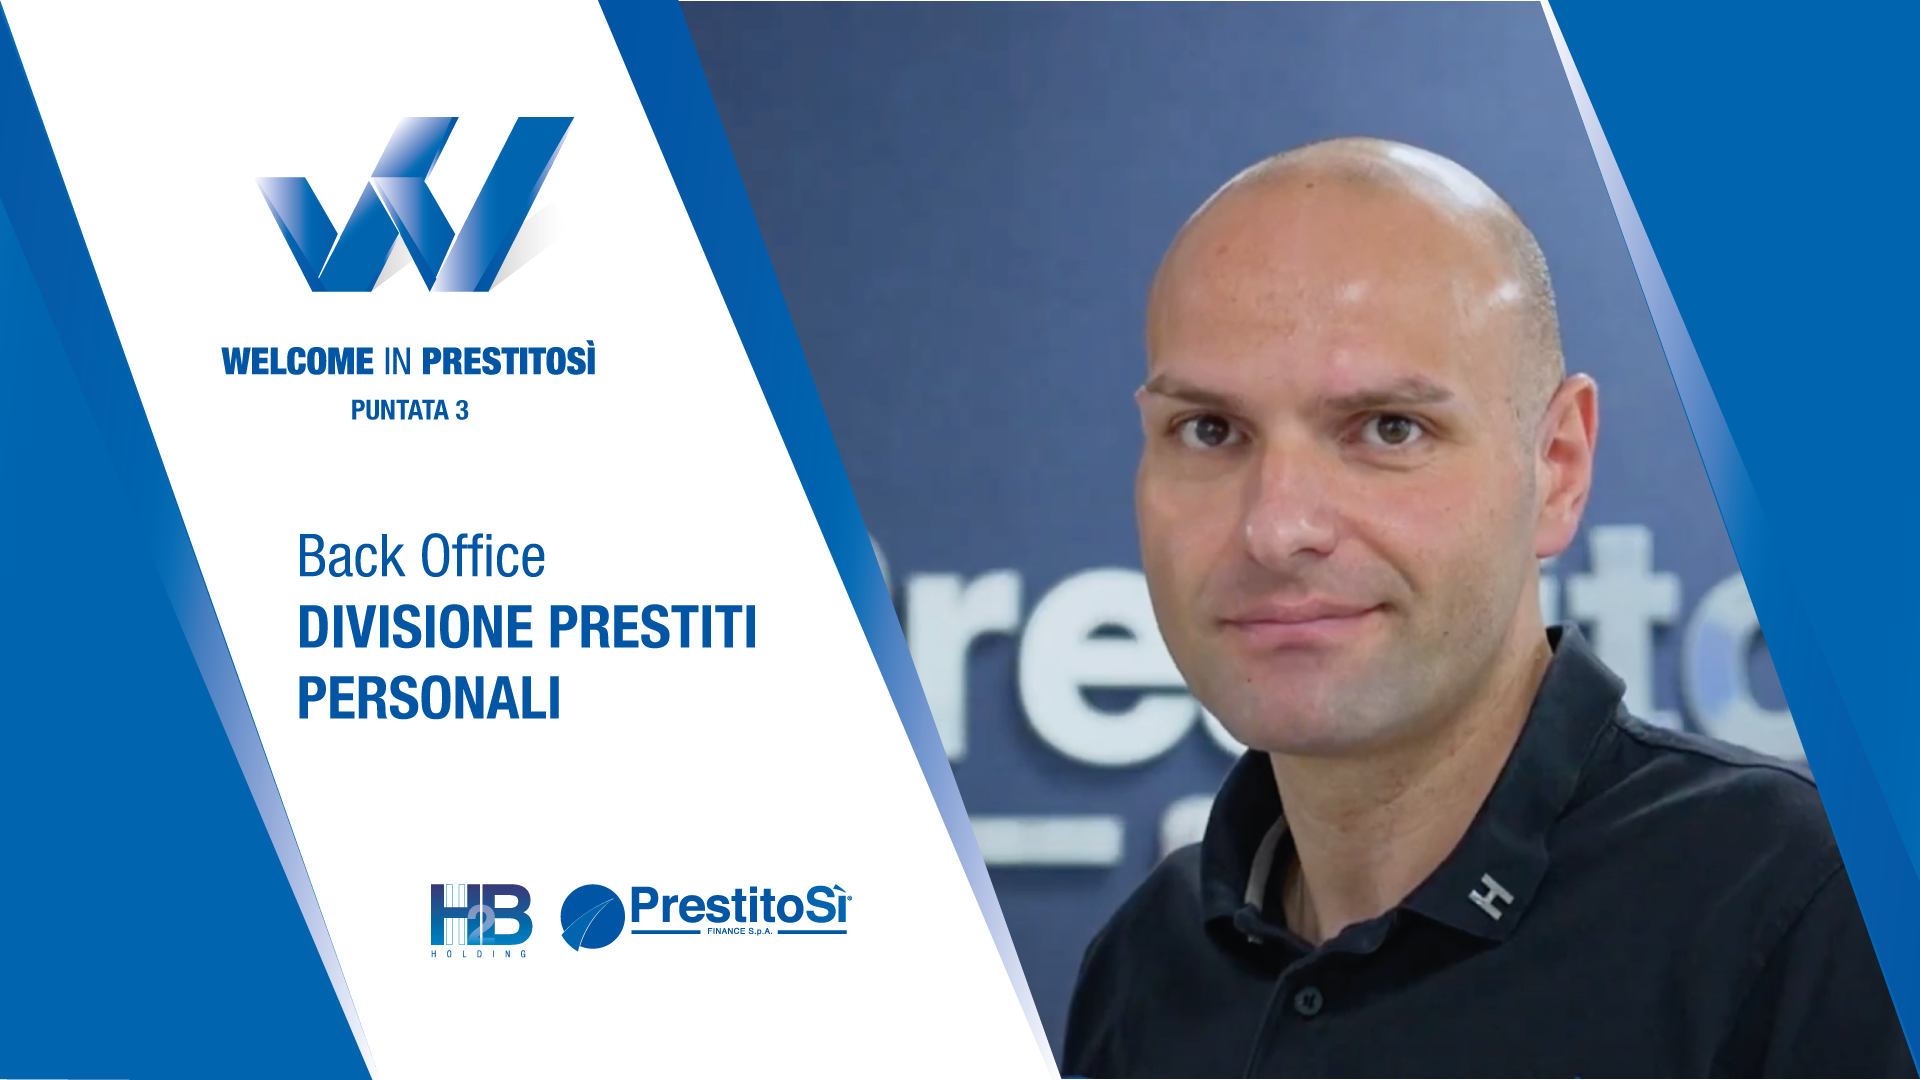 Welcome in PrestitoSì Back Office prestiti personali